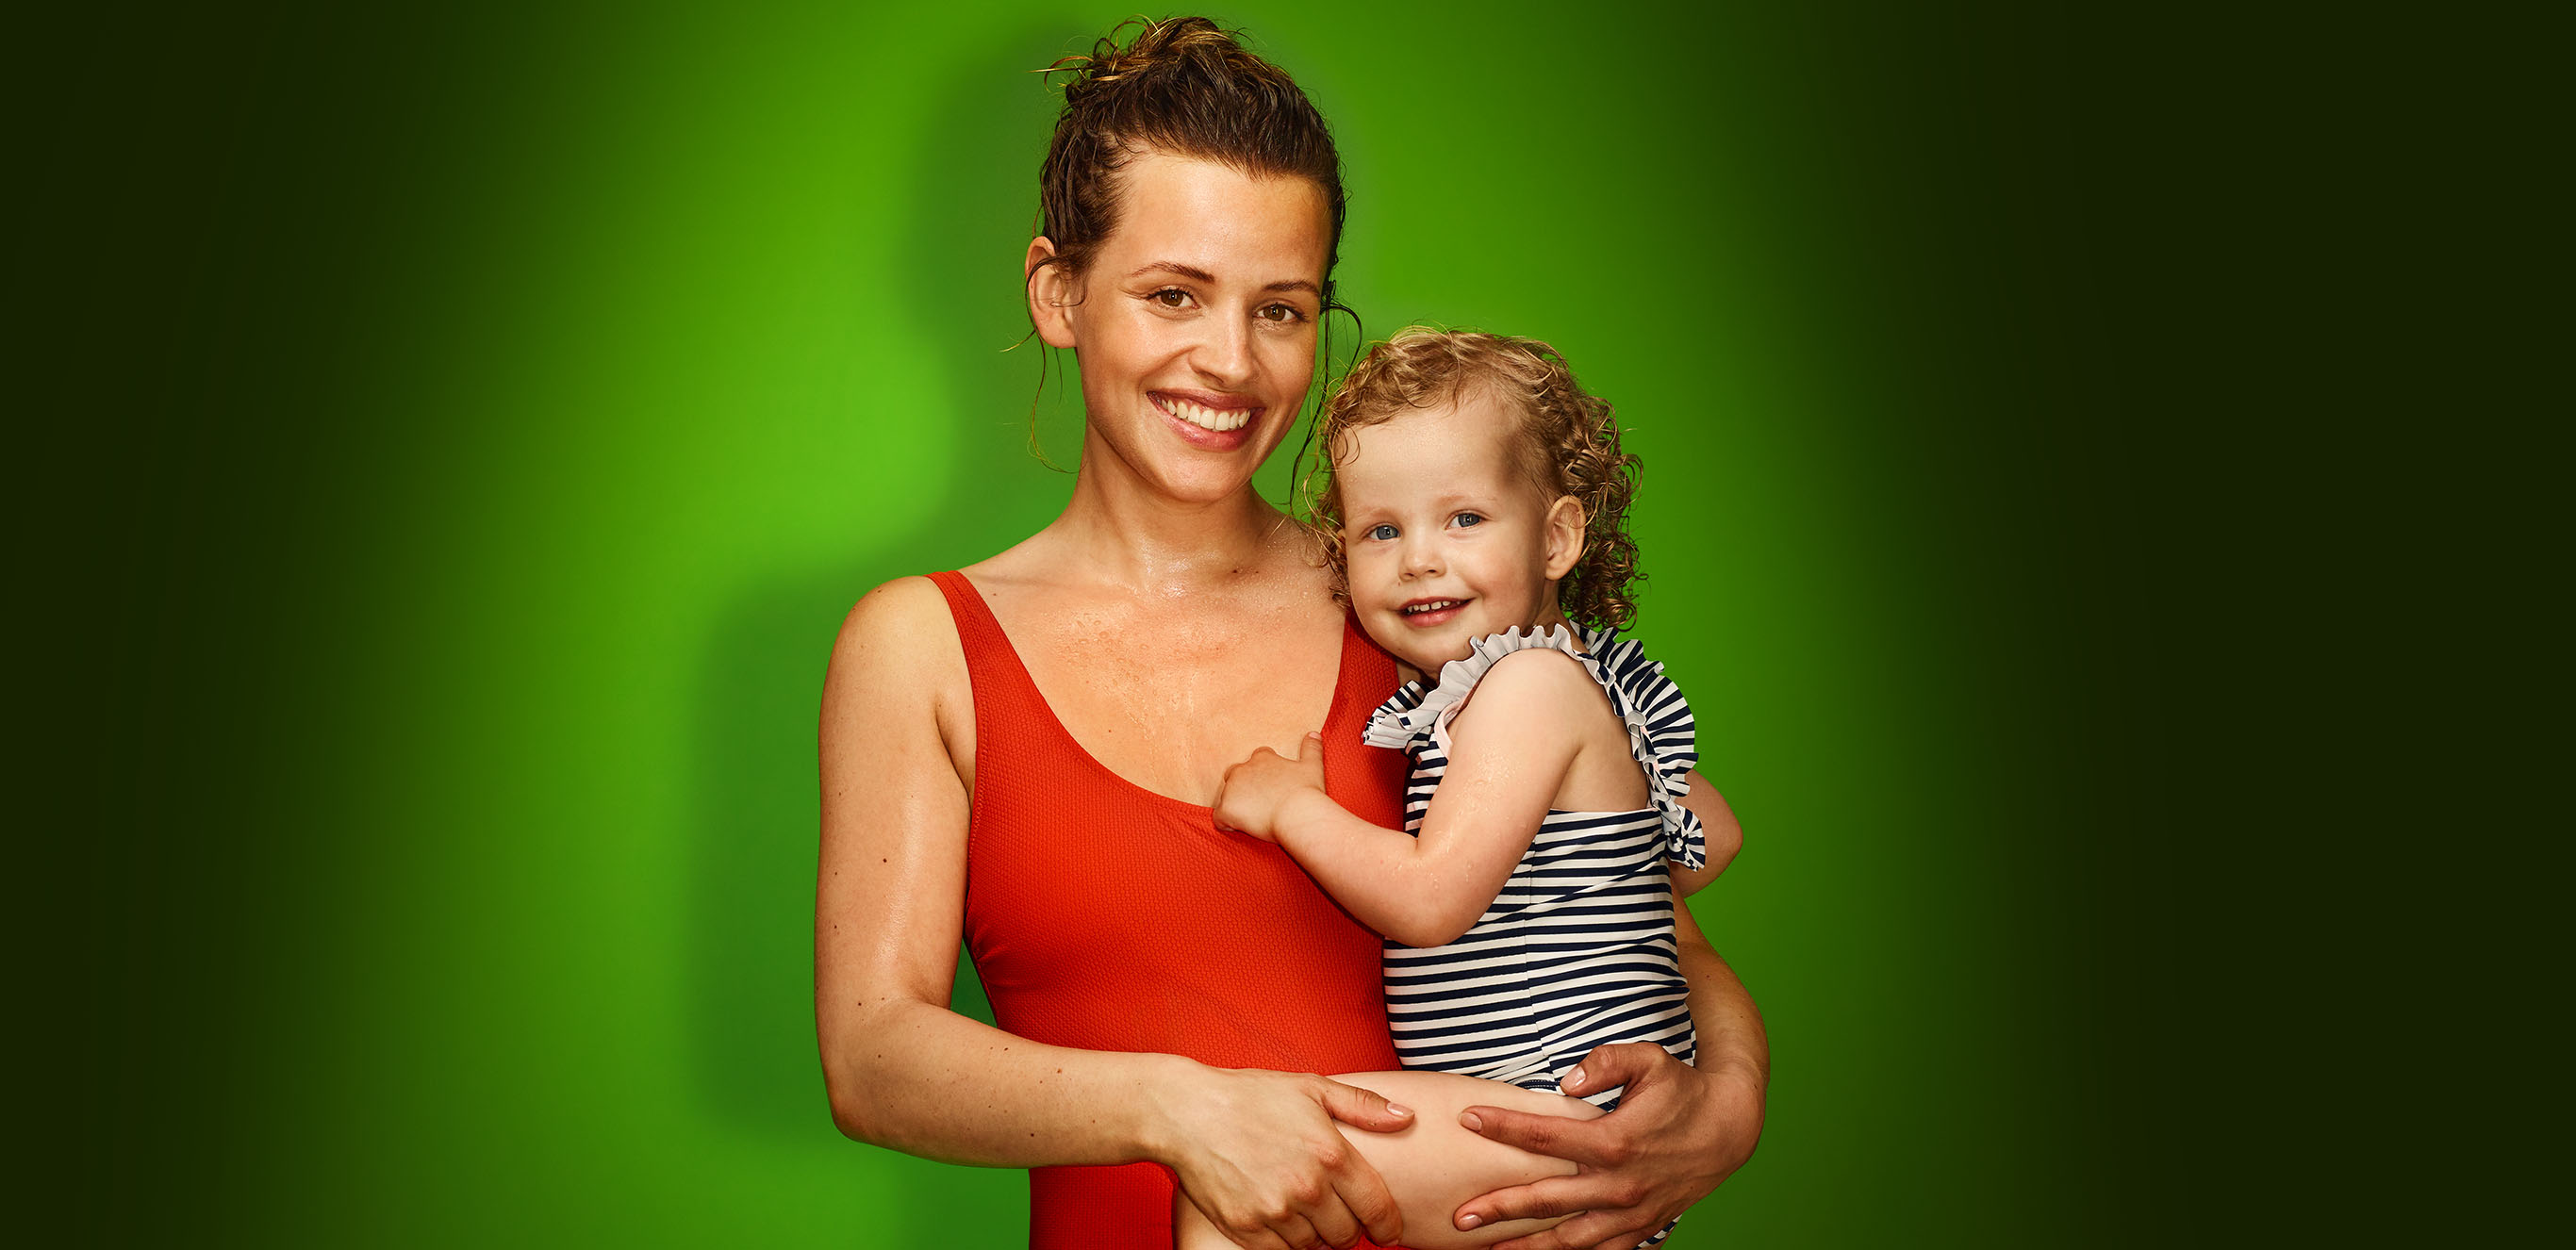 Frau mit Kind auf dem Arm vor grünem Hintergrund